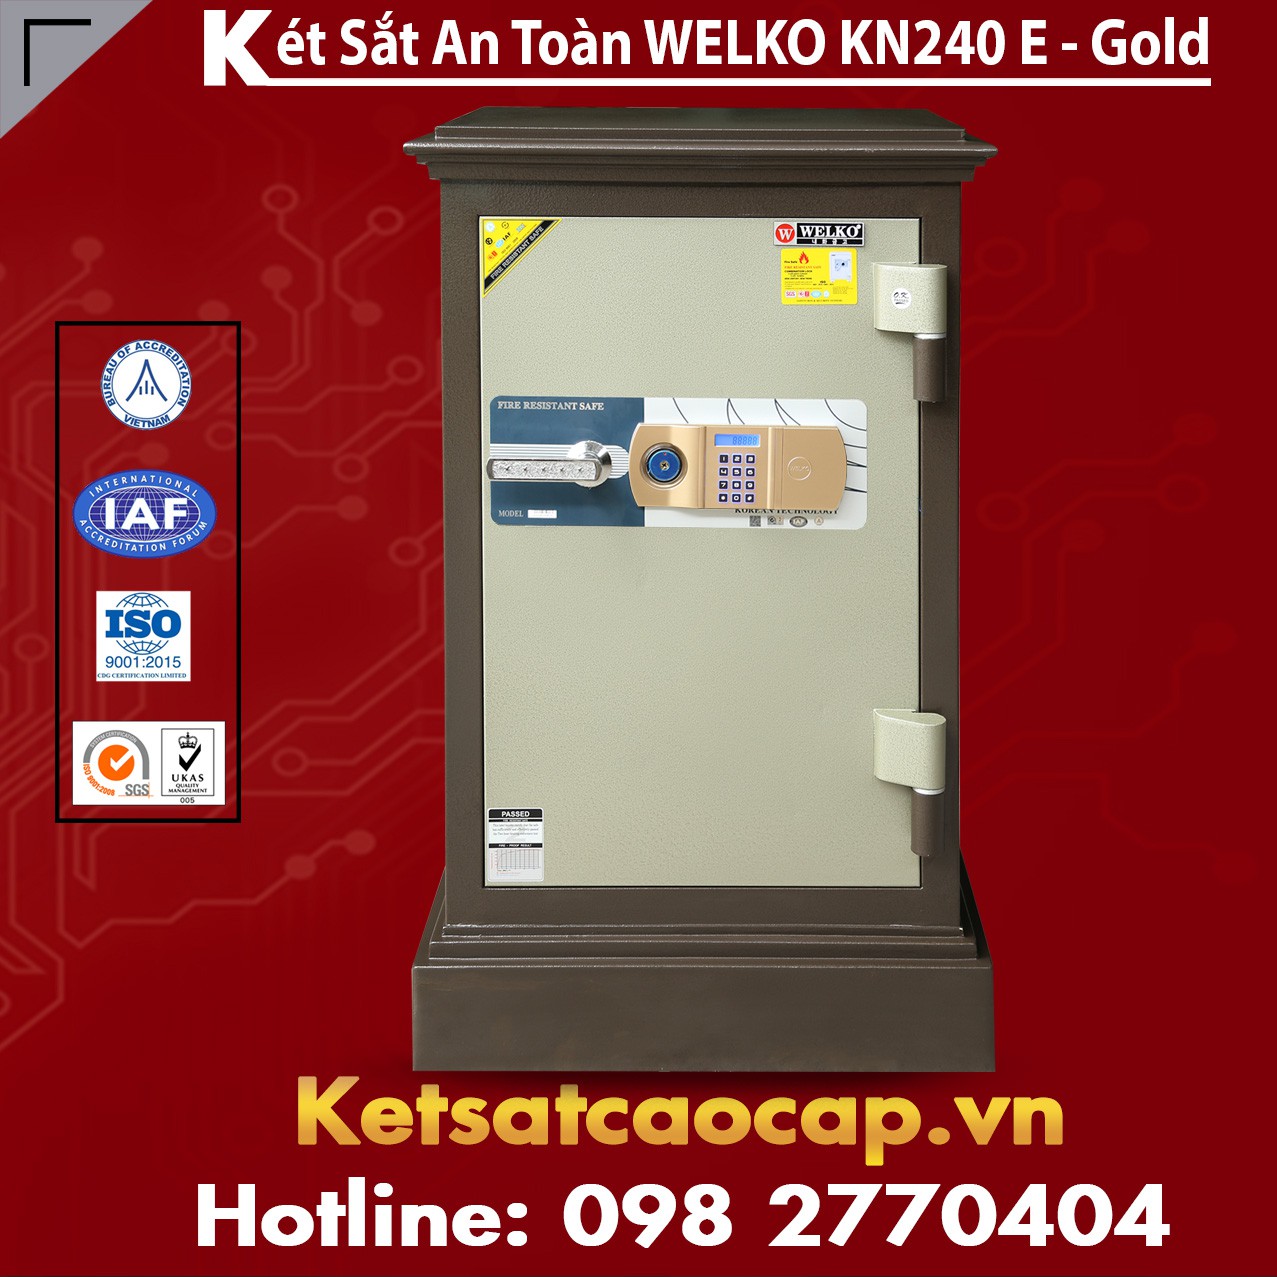 Két Sắt Công Ty Văn Phòng WELKO KN240 Brown - E Gold